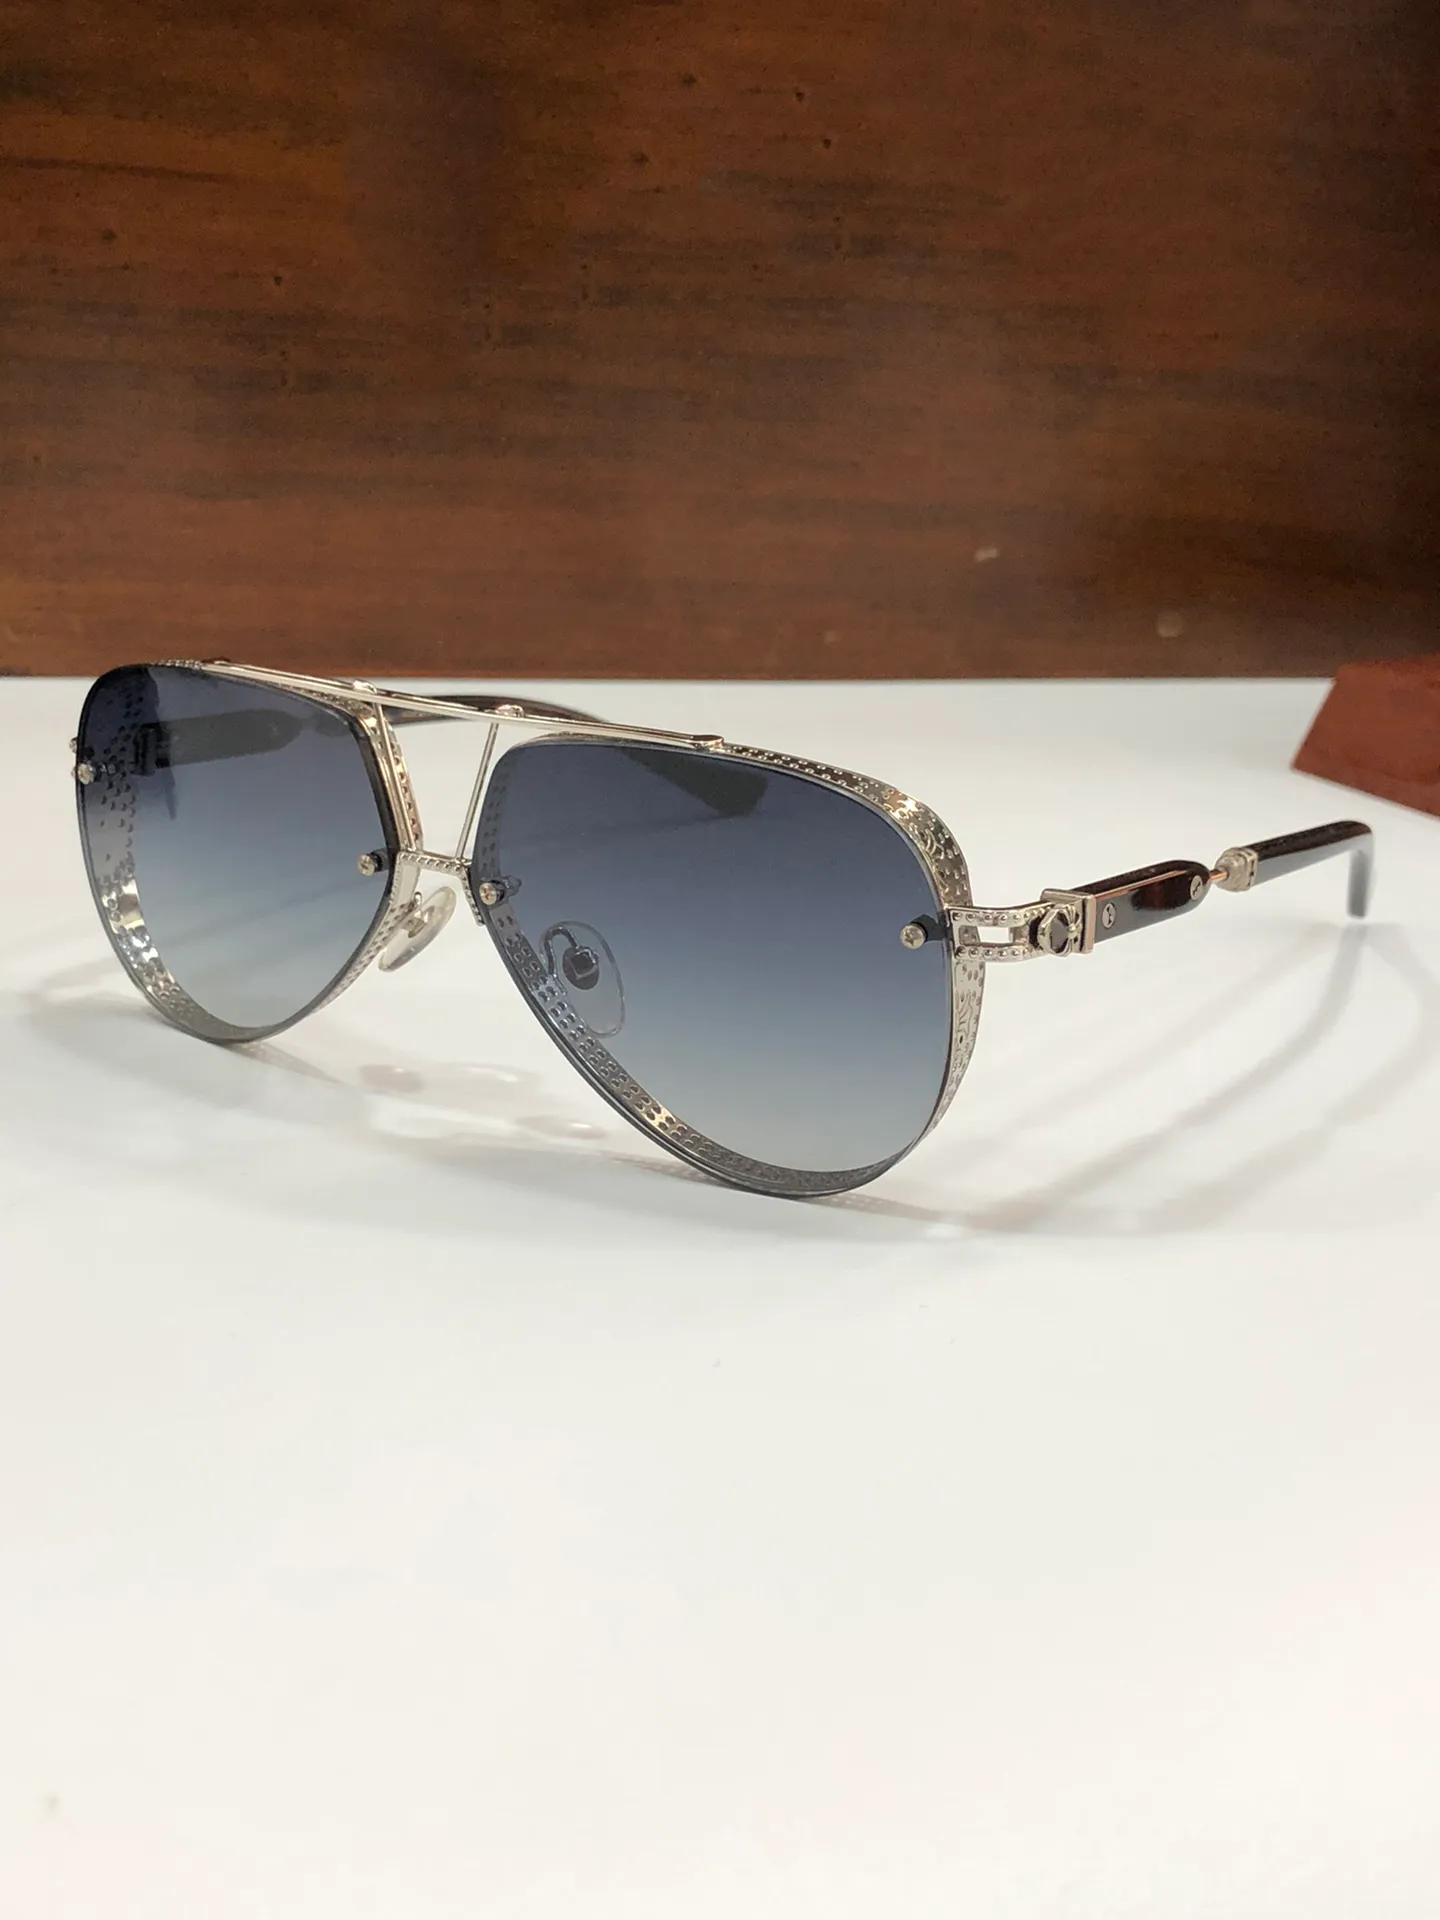 nouvelles lunettes de soleil design de luxe chaudes pour hommes desing POSTYAN mode populaire lunettes de soleil pilote cadre en métal revêtement verres polarisés lunettes style lentille UV400 livrées avec étui